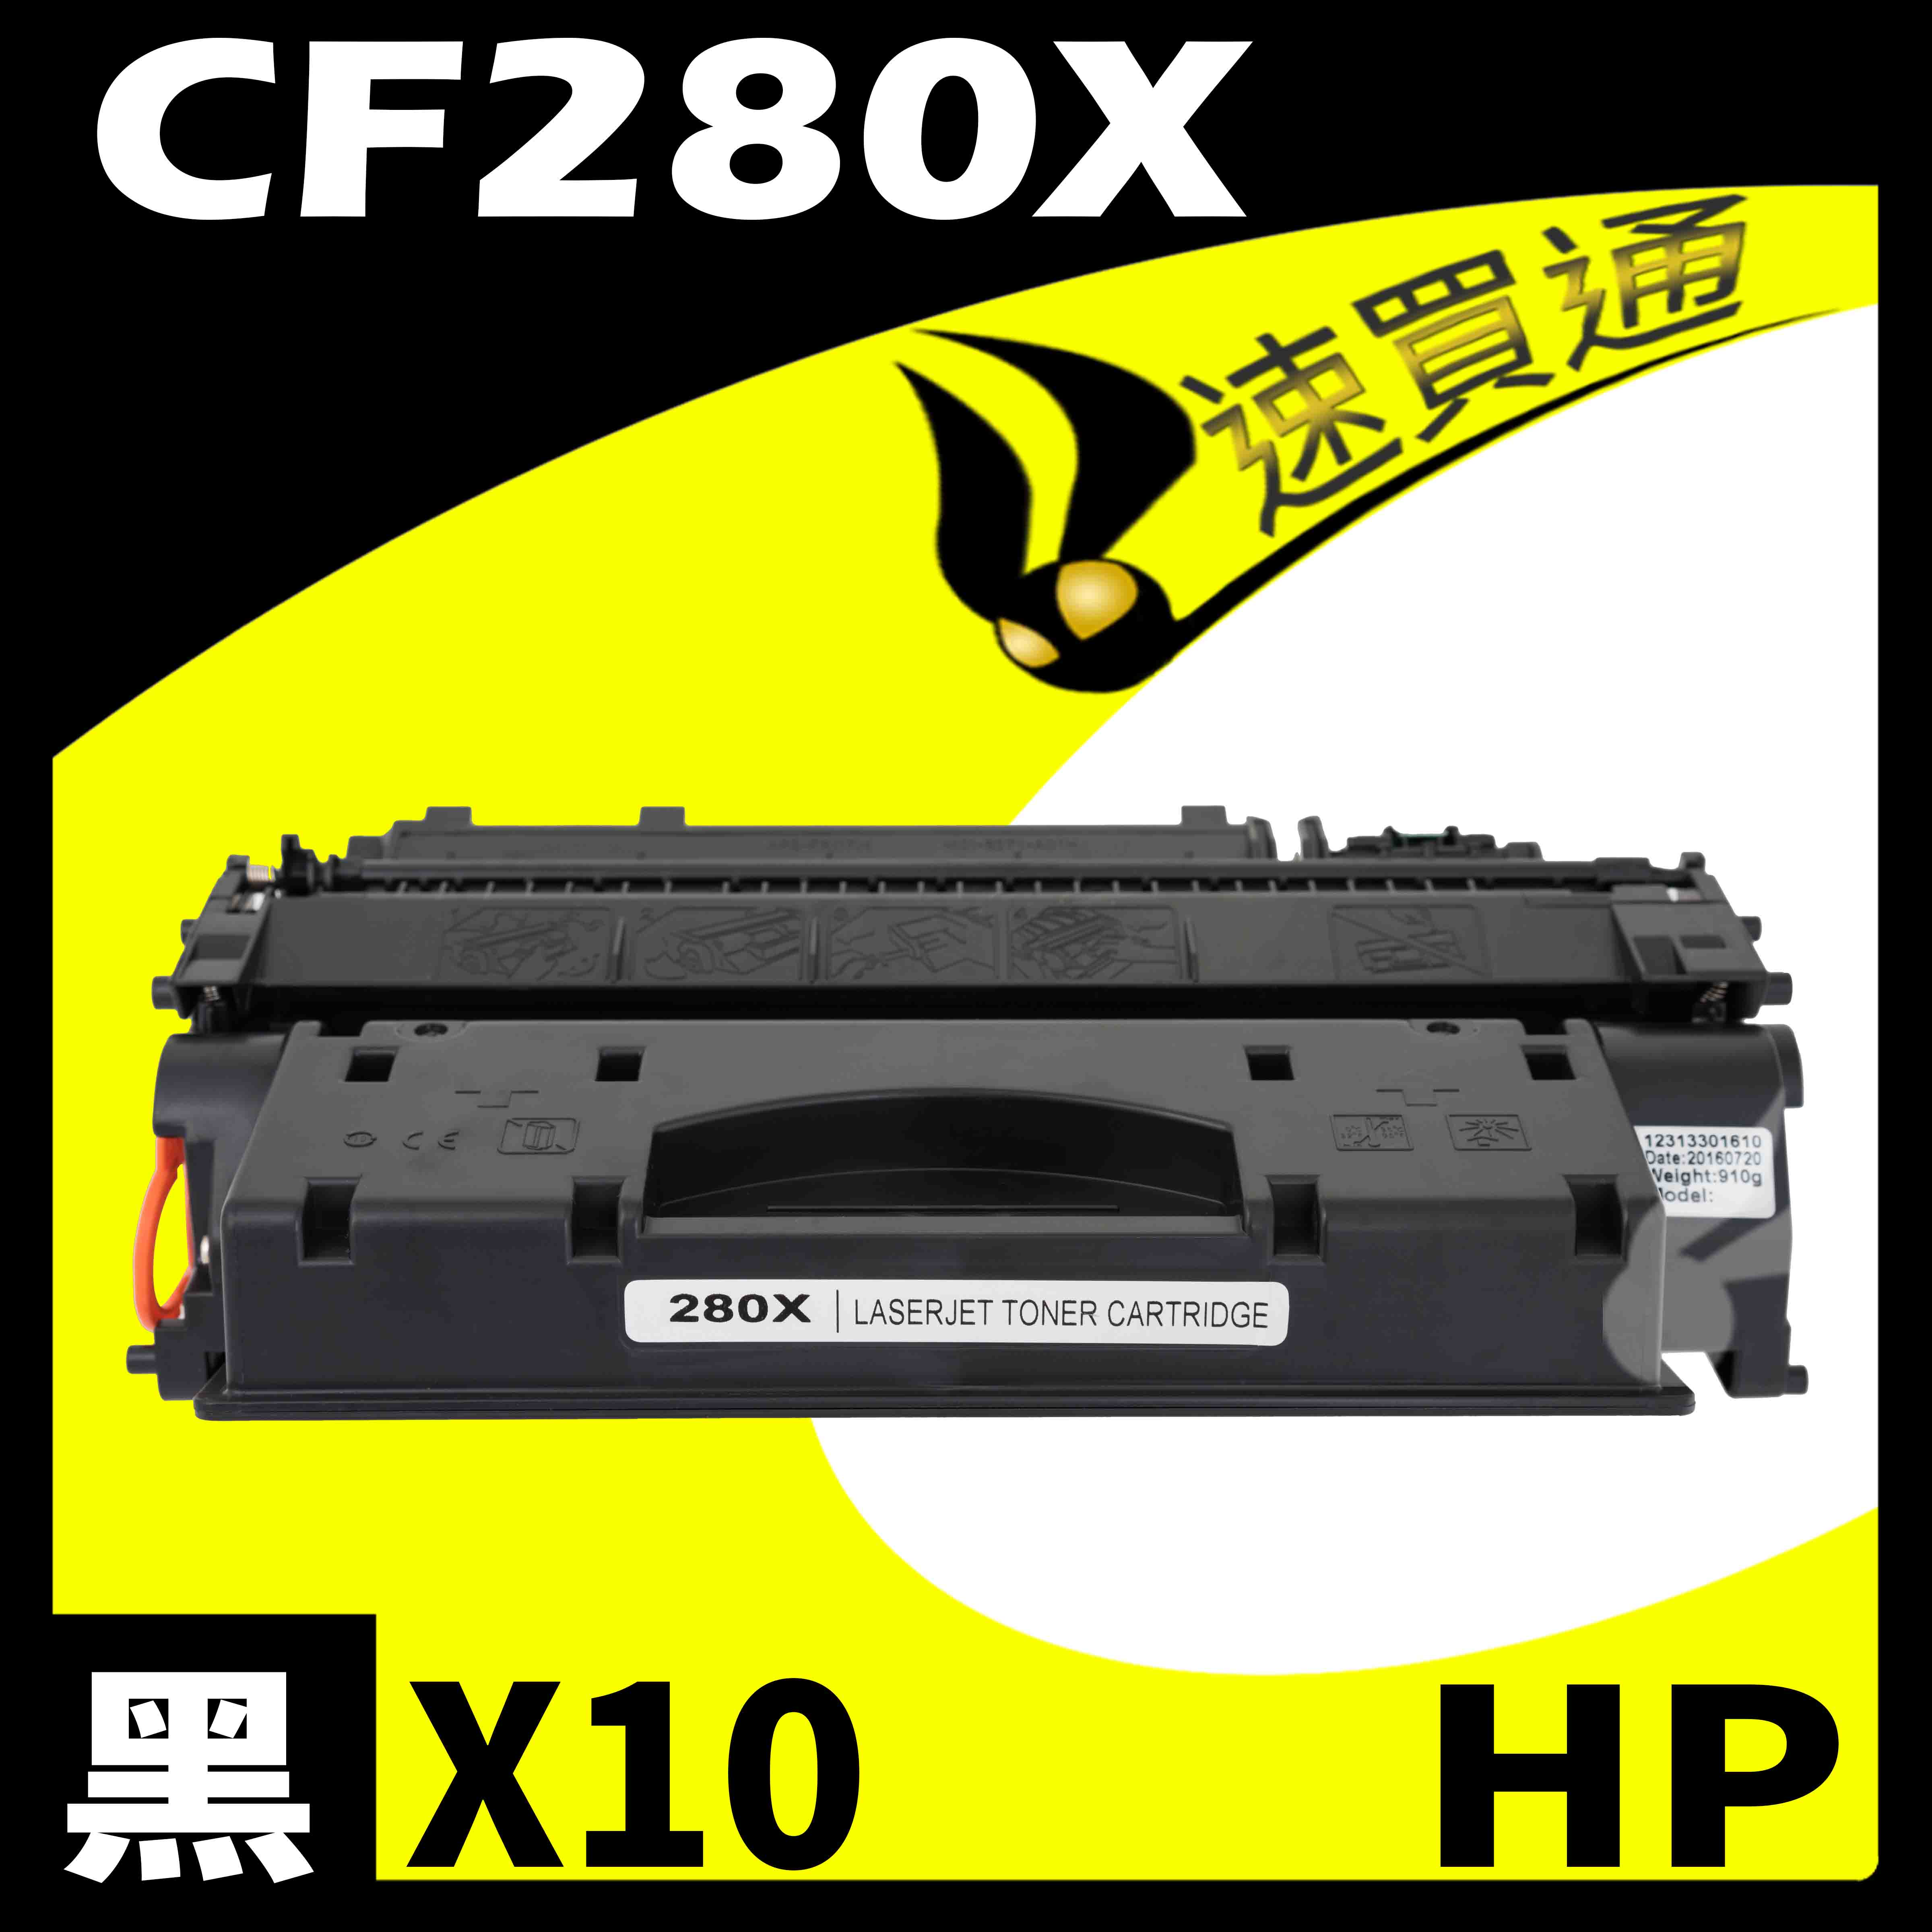 【速買通】超值10件組 HP CF280X 相容碳粉匣